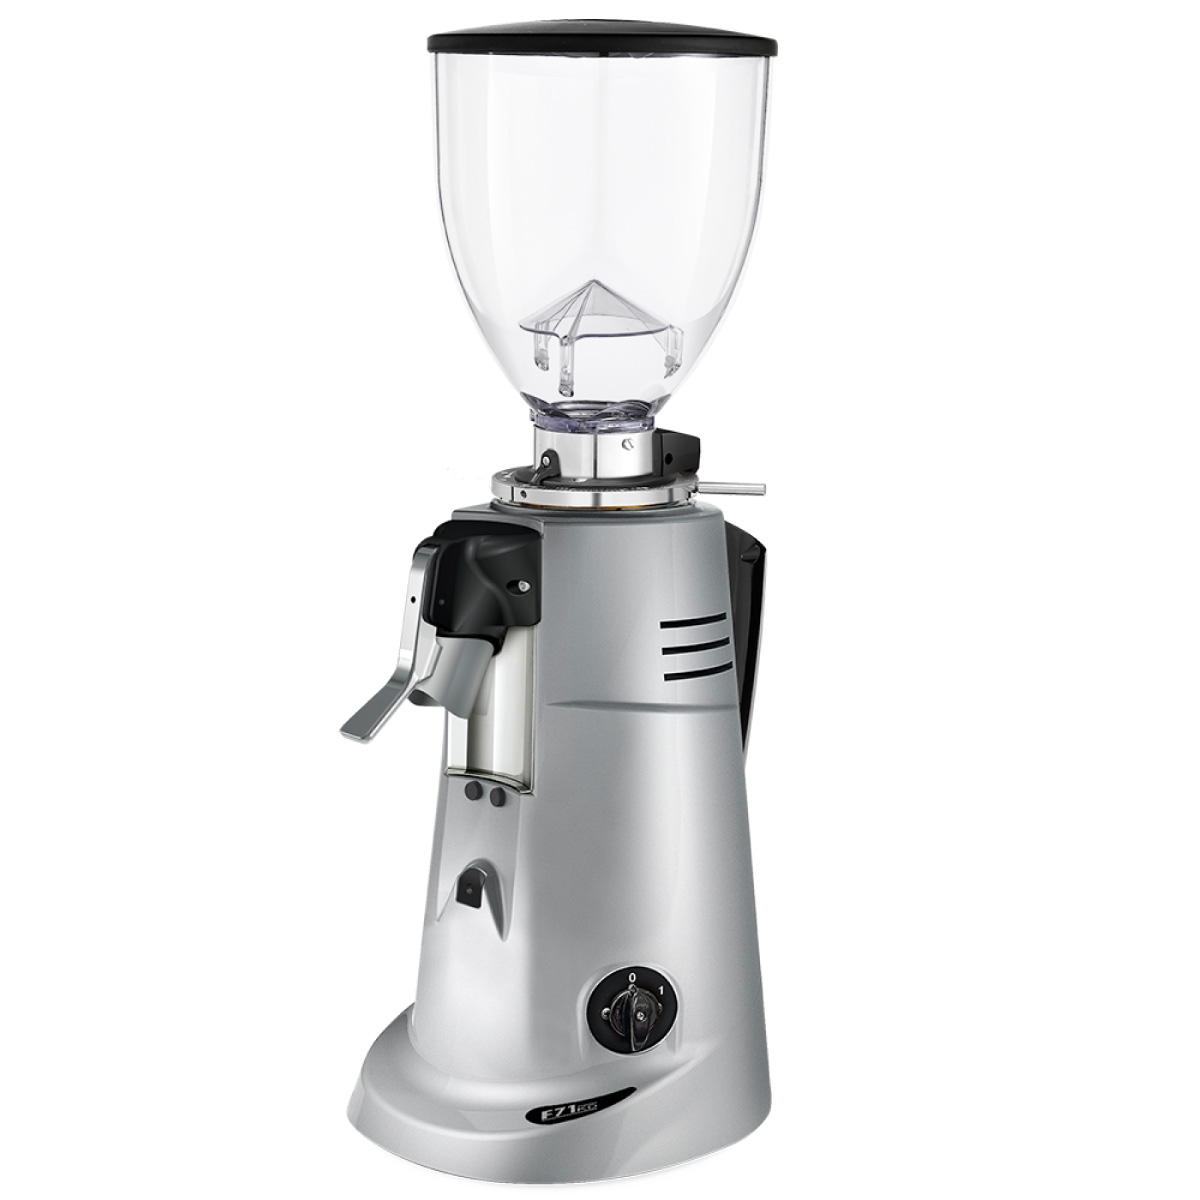 Moudre la café avec un moulin à café - Matériel Horeca 